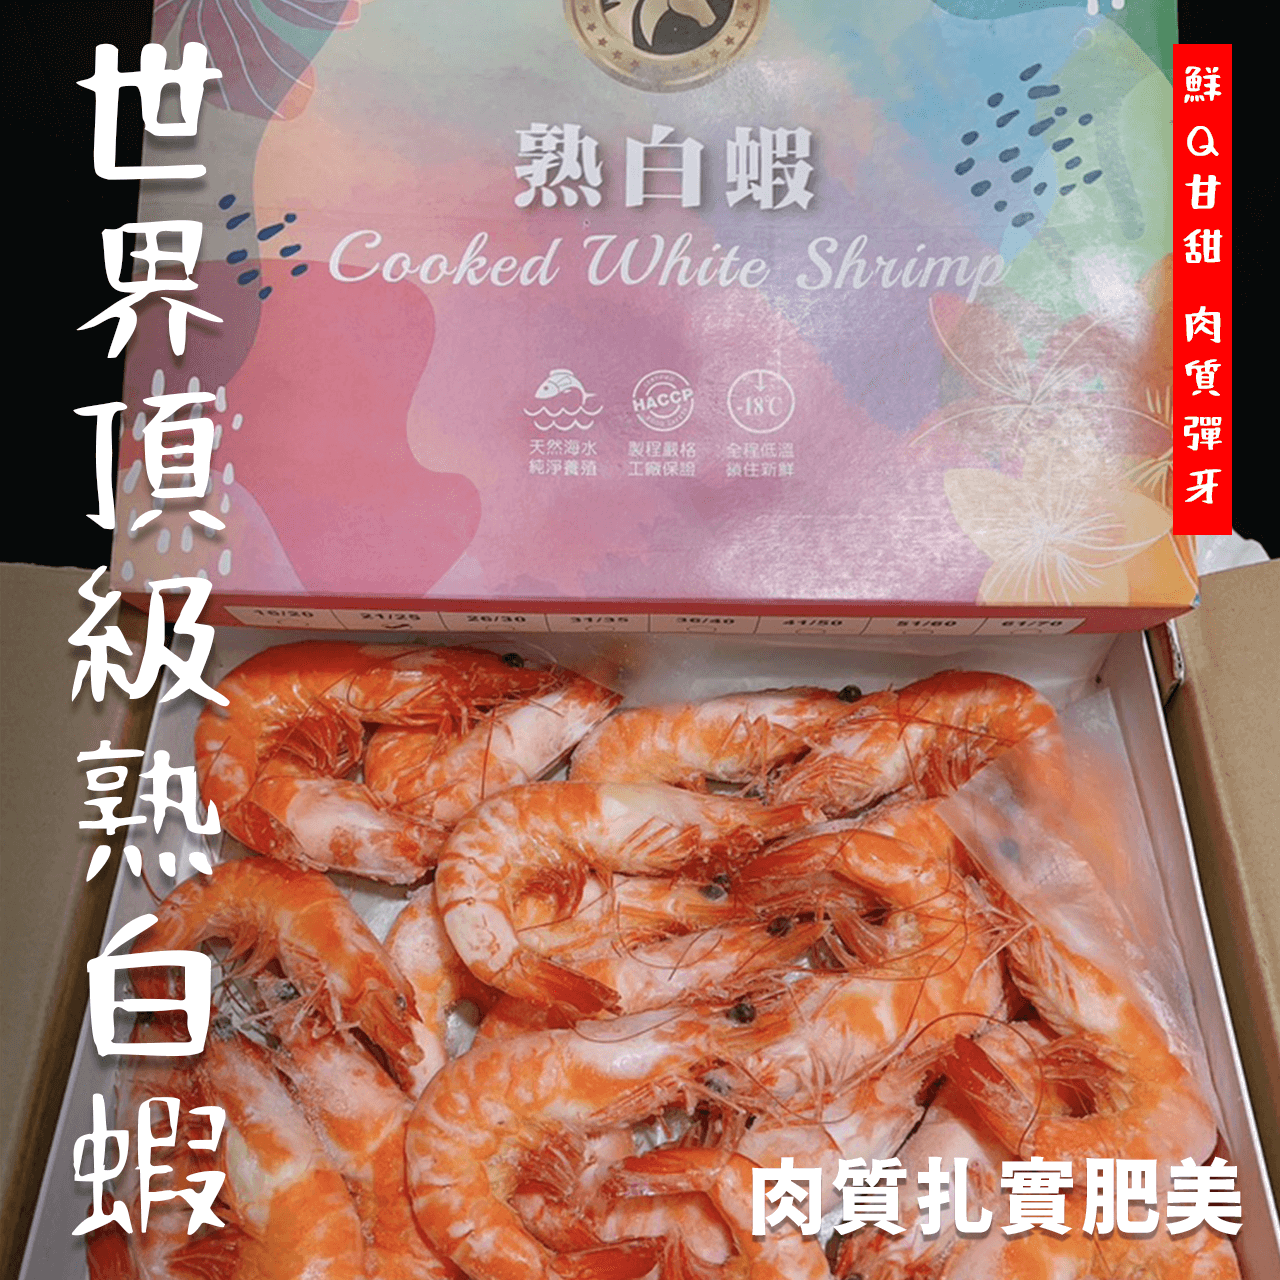 【天天來海鮮】熟白蝦 重量:1100克 產地:馬來西亞